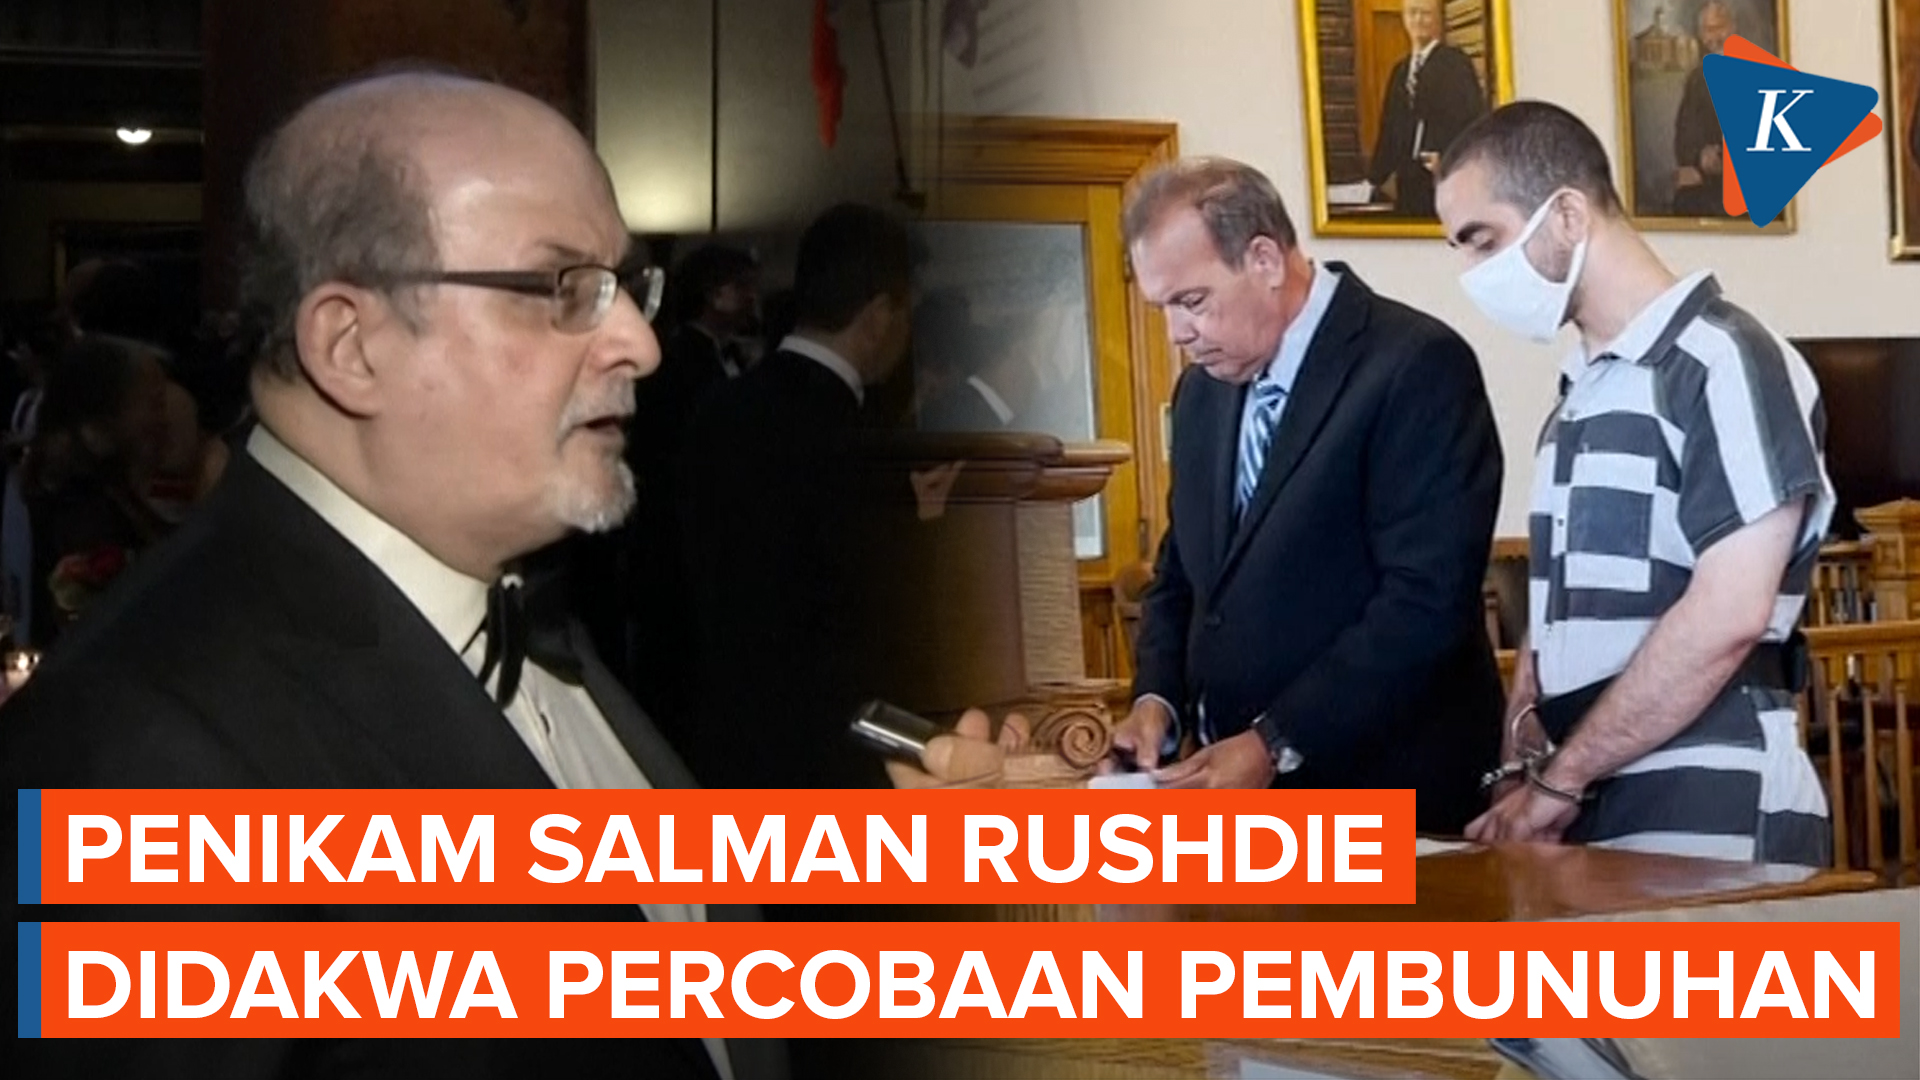 Hadi Matar, Penikam Salman Rushdie Mengaku Tidak Bersalah